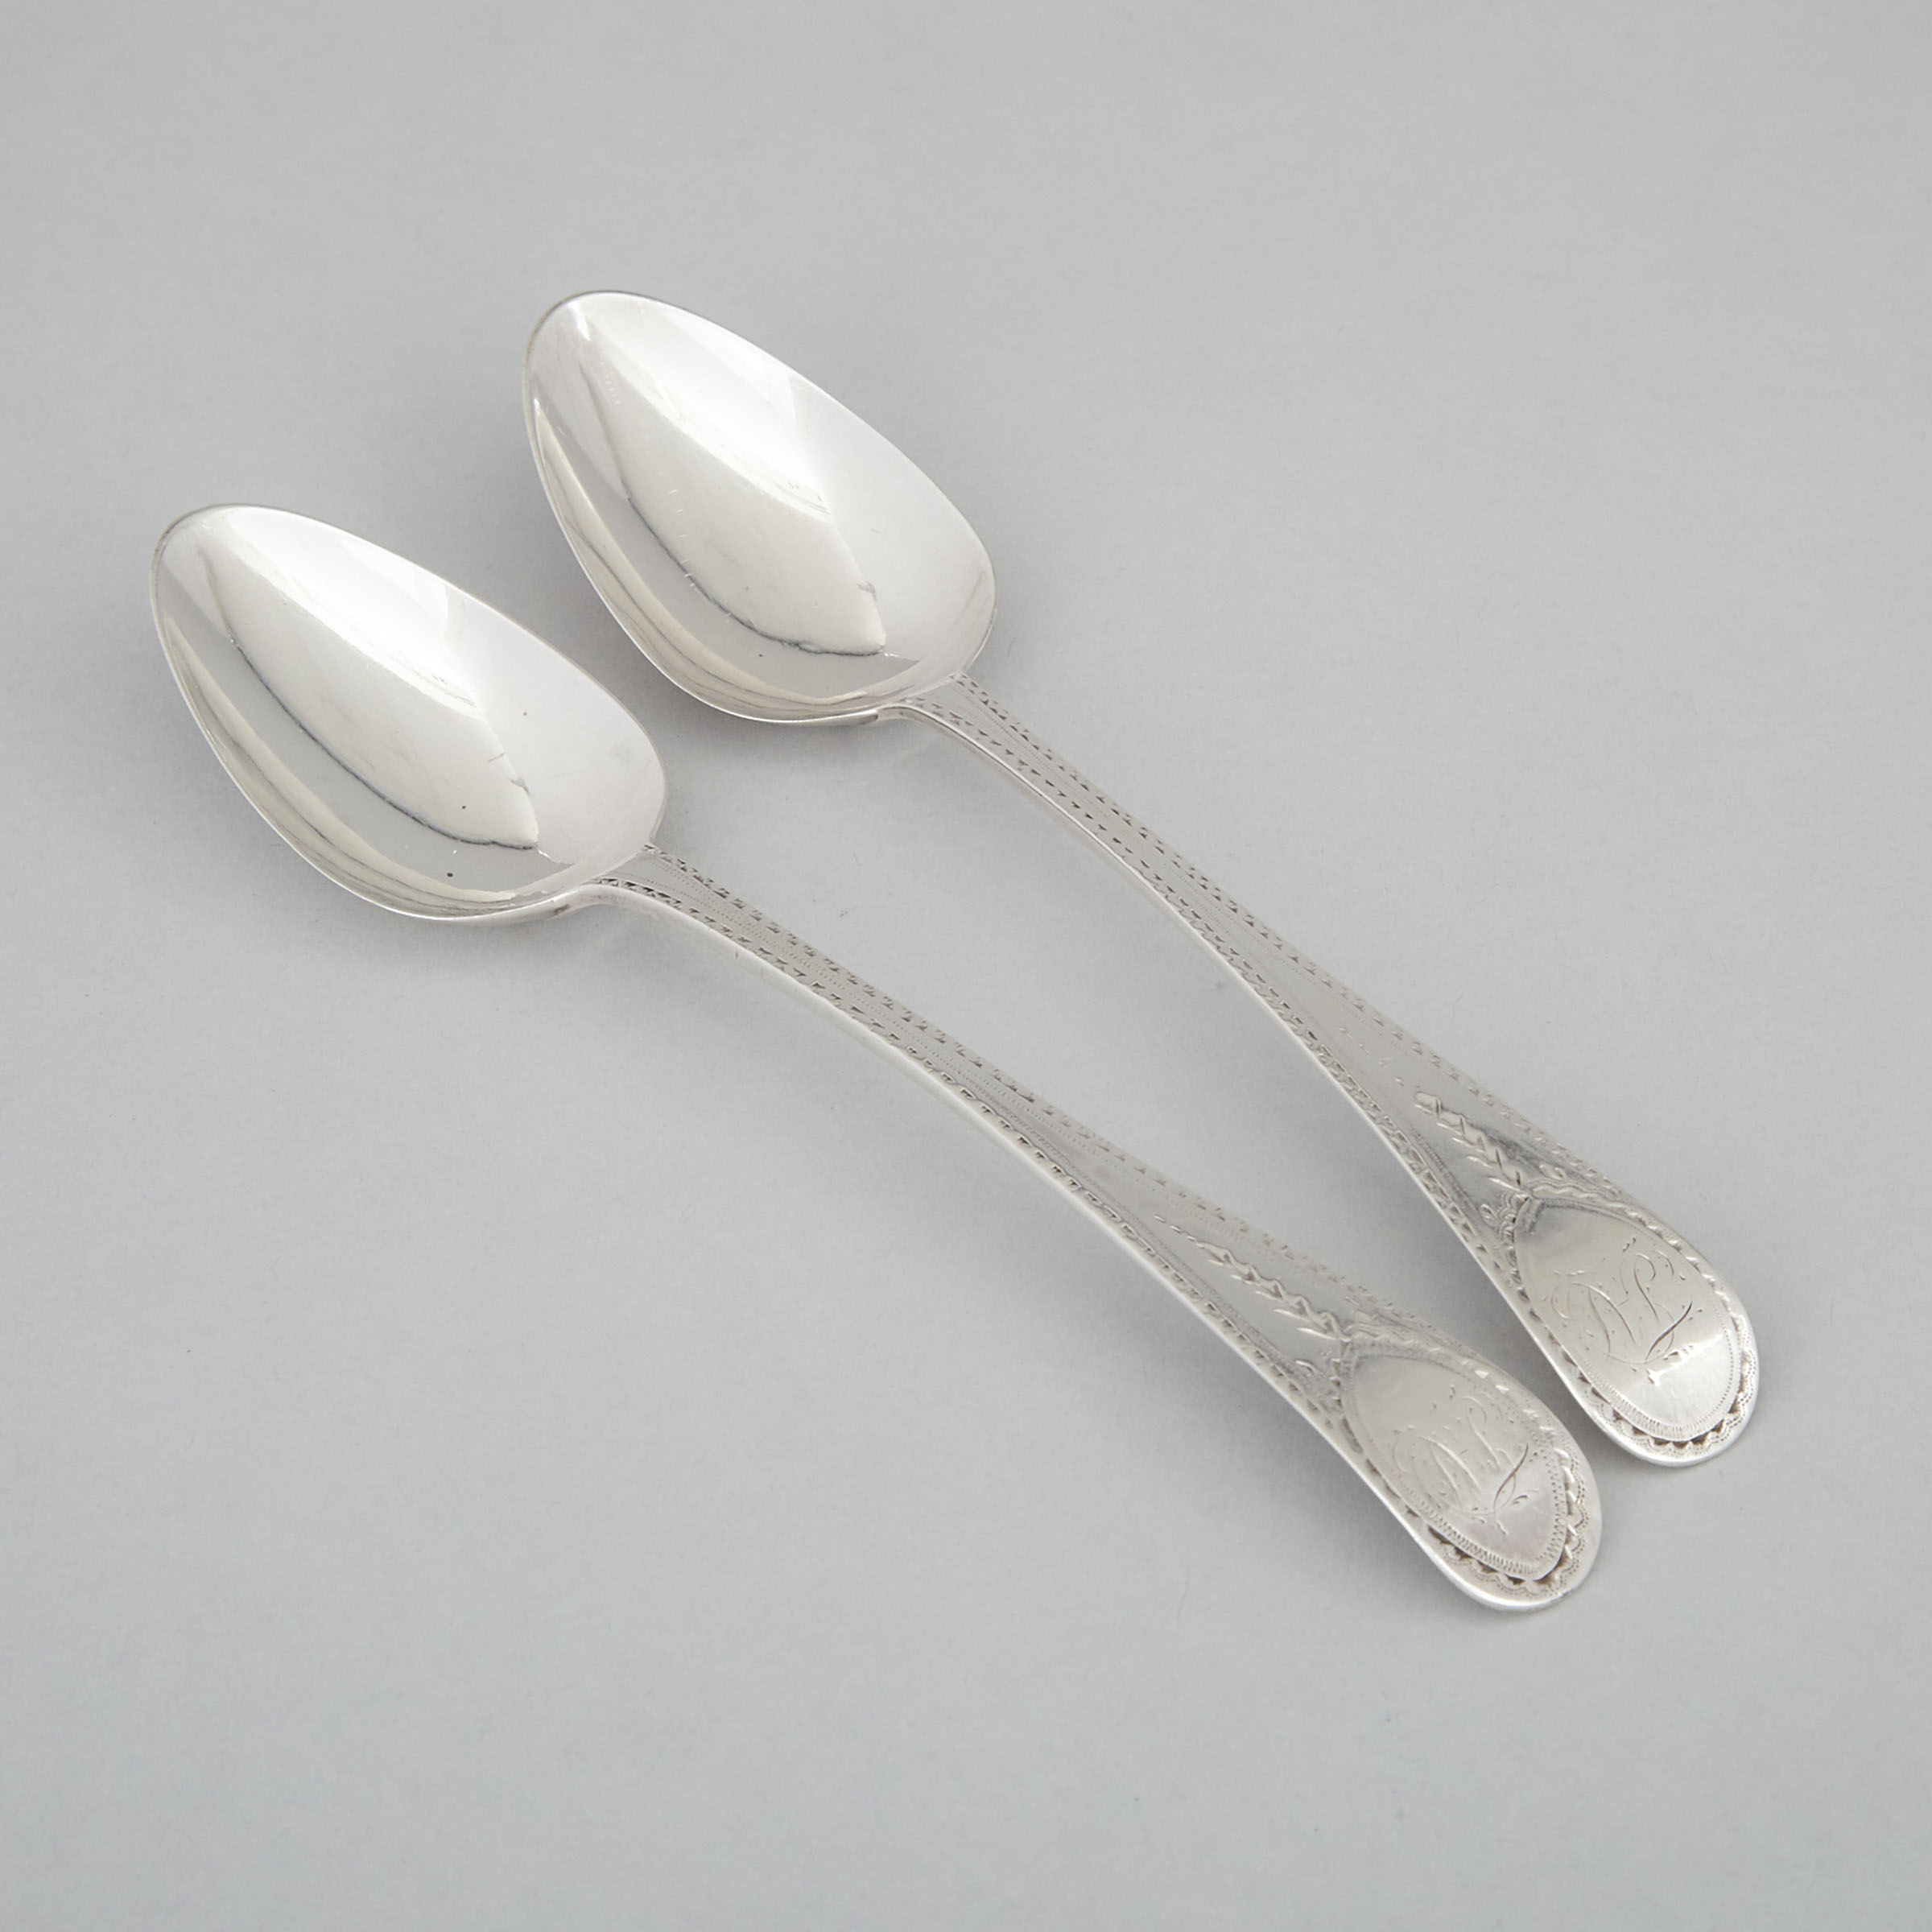 Pair of George III Silver Bright-Cut Engraved Table Spoons, Peter & Ann Bateman, London, 1793